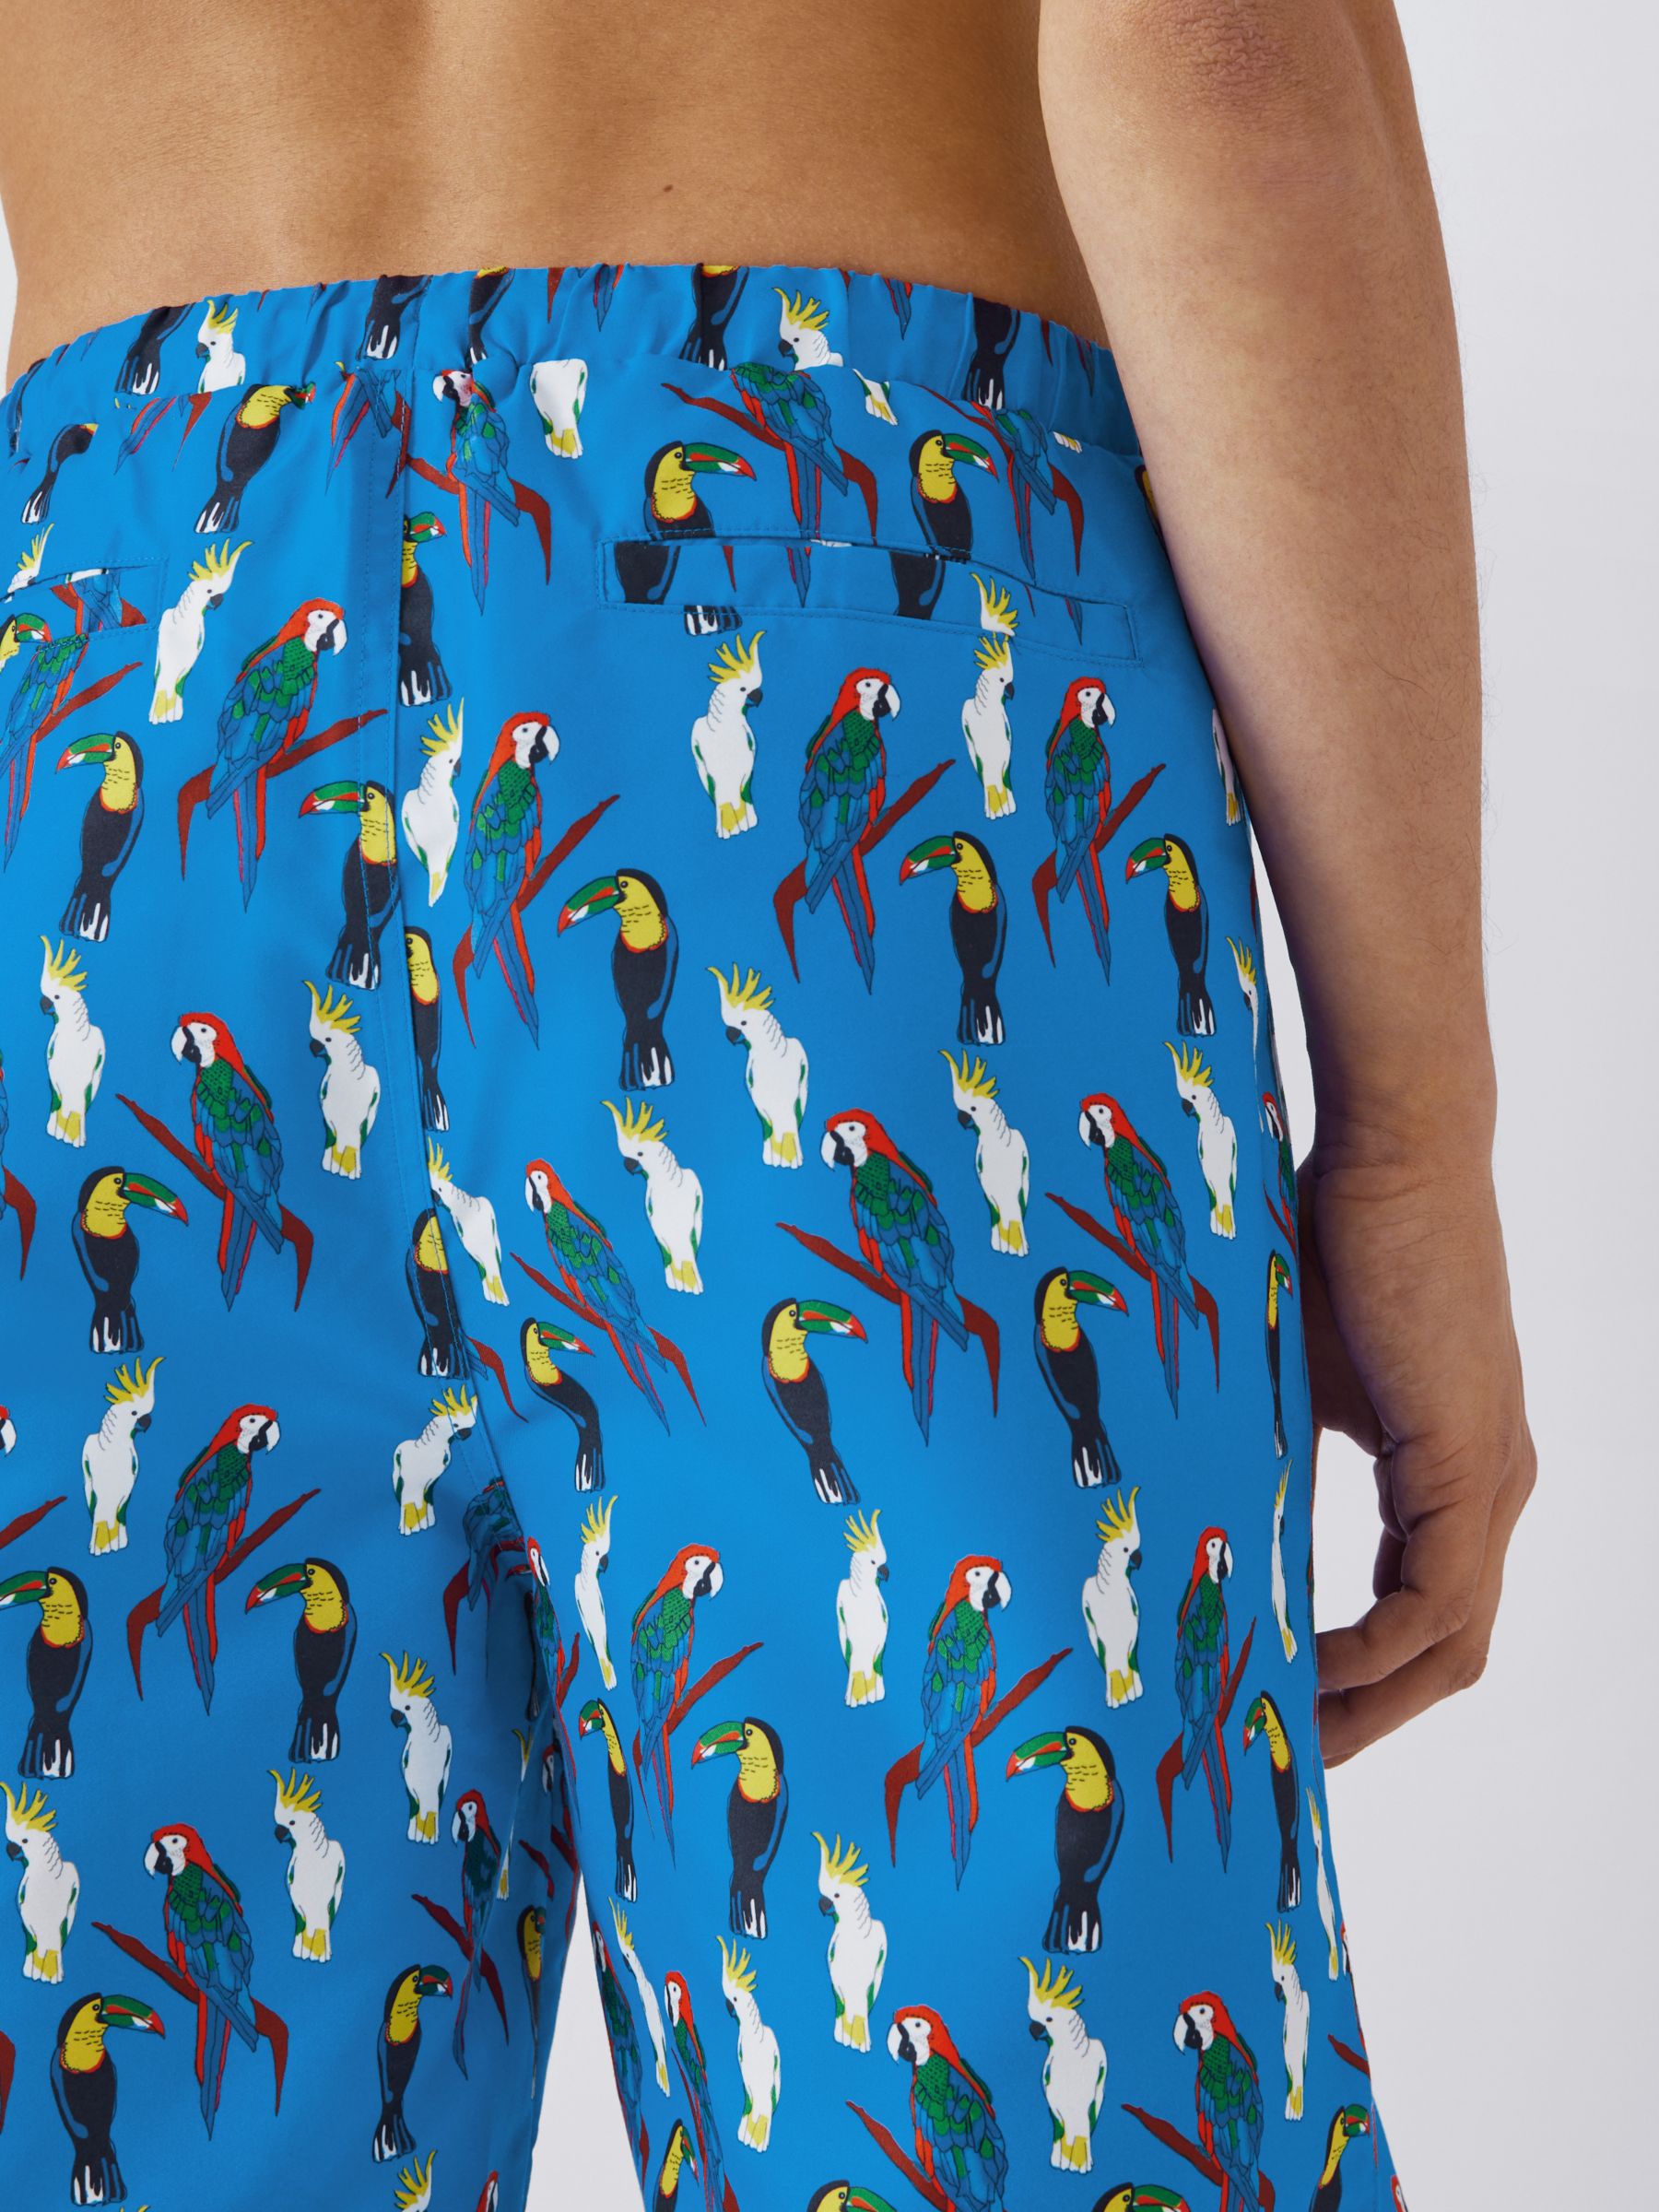 Their Nibs Tropical Bird Print Swim Shorts, Blue/Multi, L